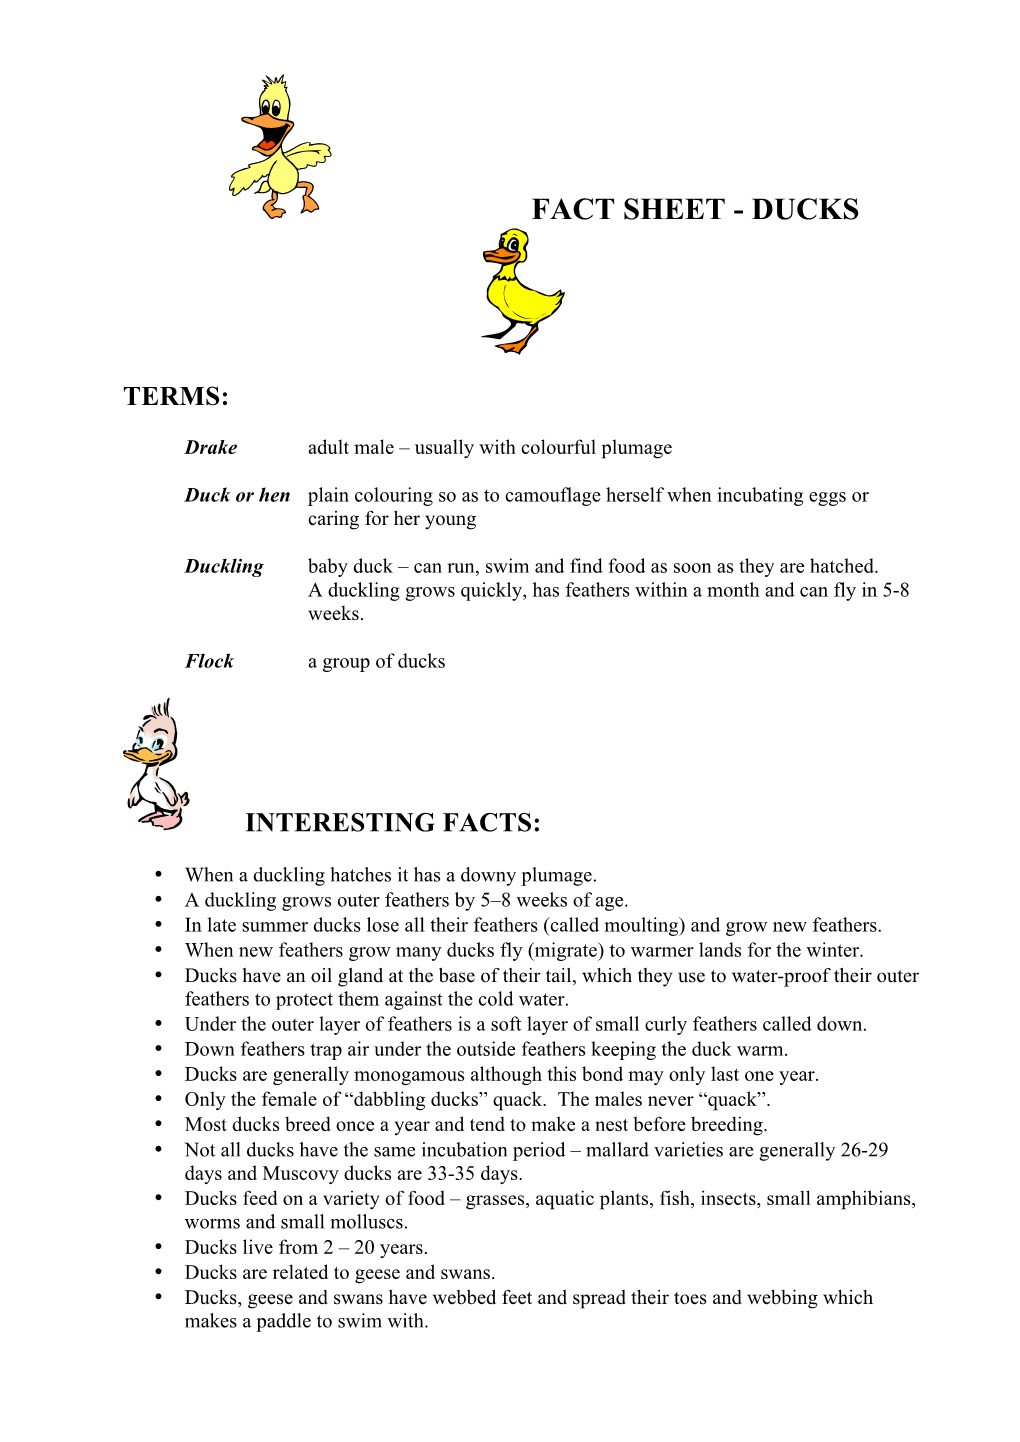 Fact Sheet - Ducks